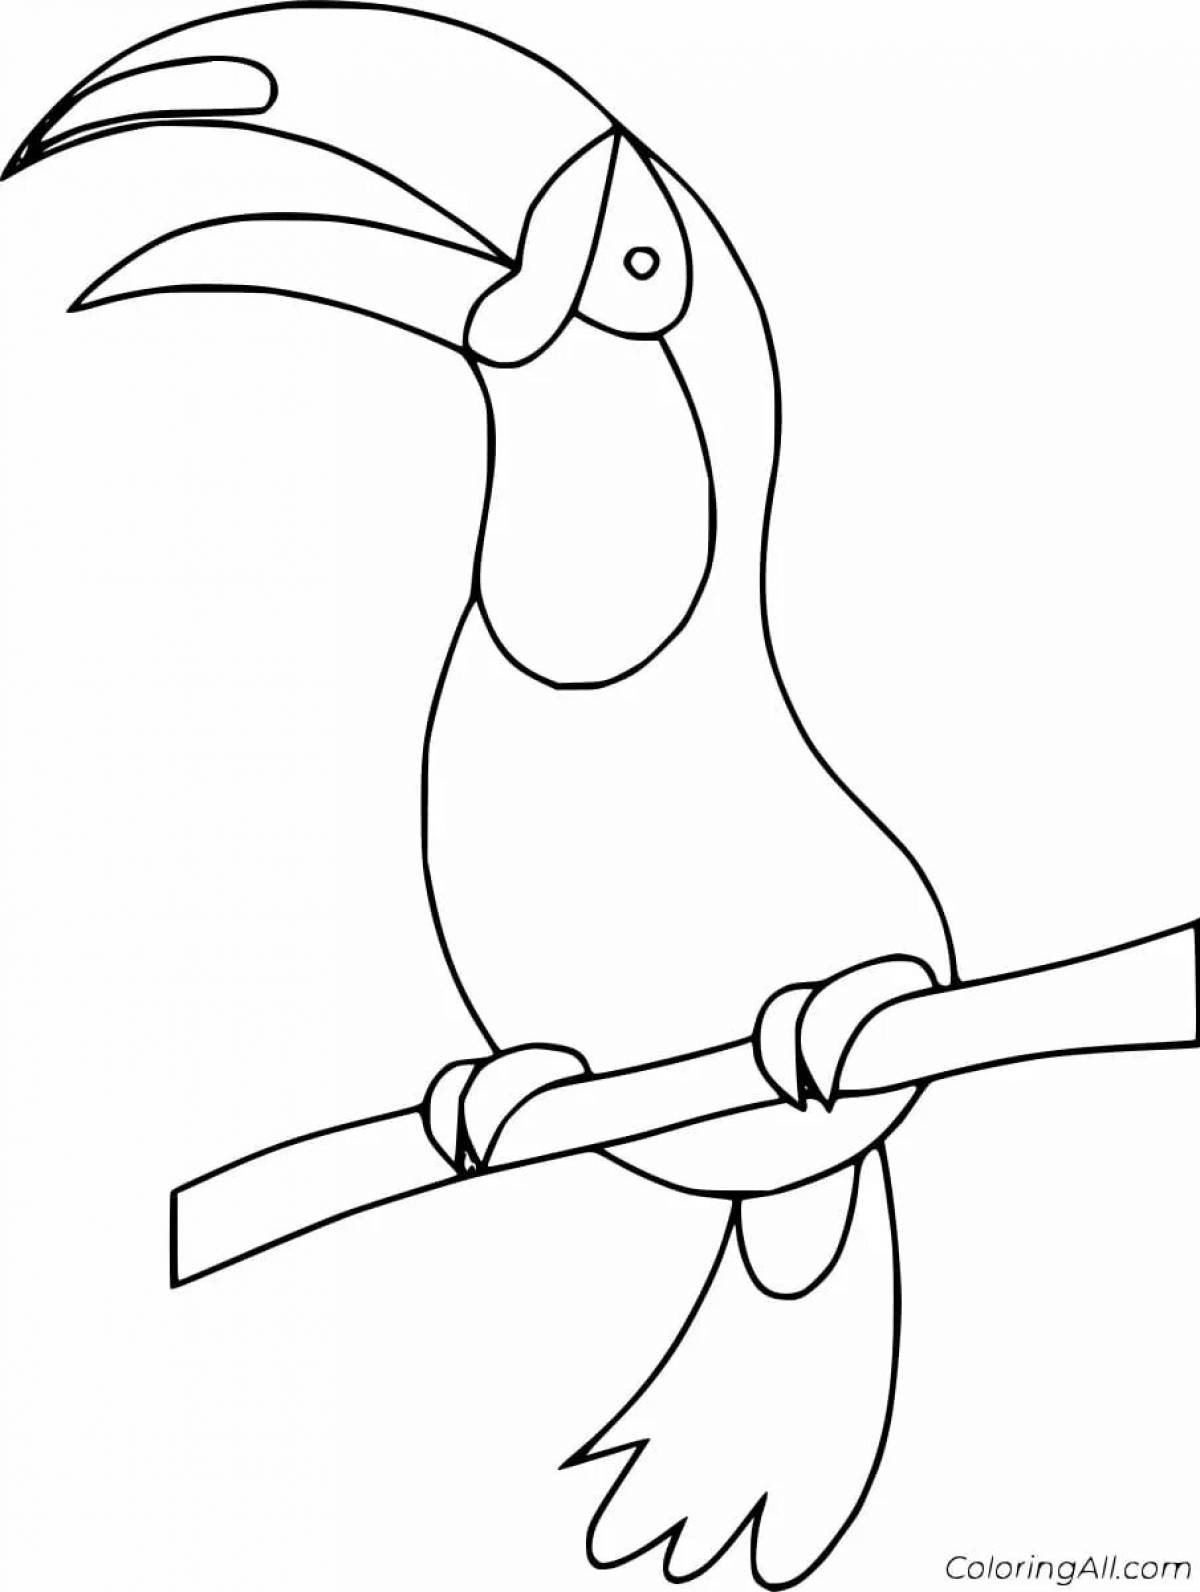 Unique toucan coloring book for kids